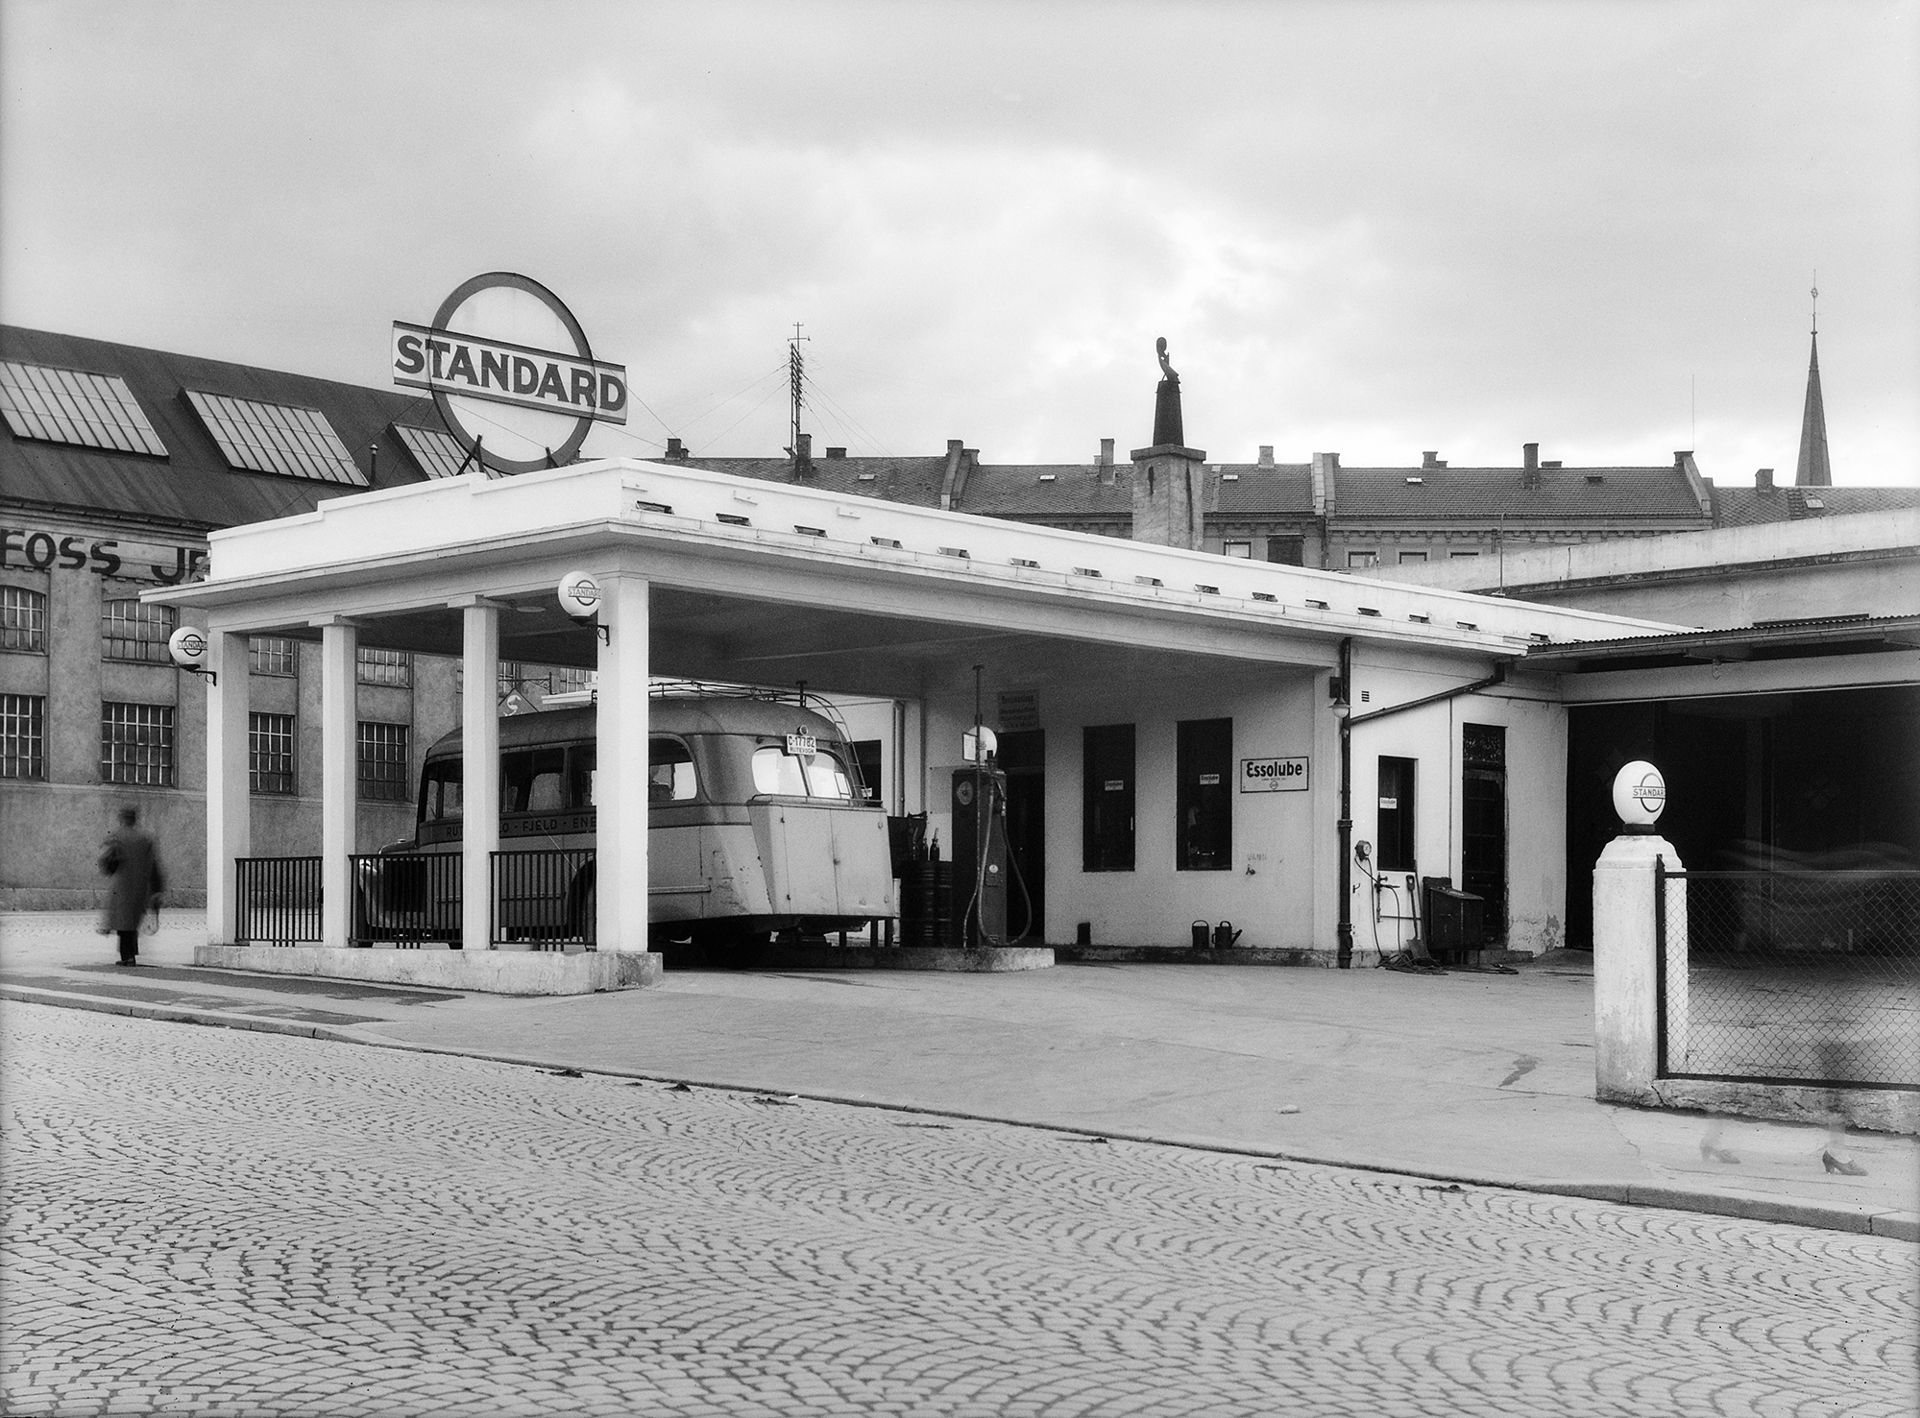 En gammeldags kort buss står parkert under tak på en bensinstasjon.